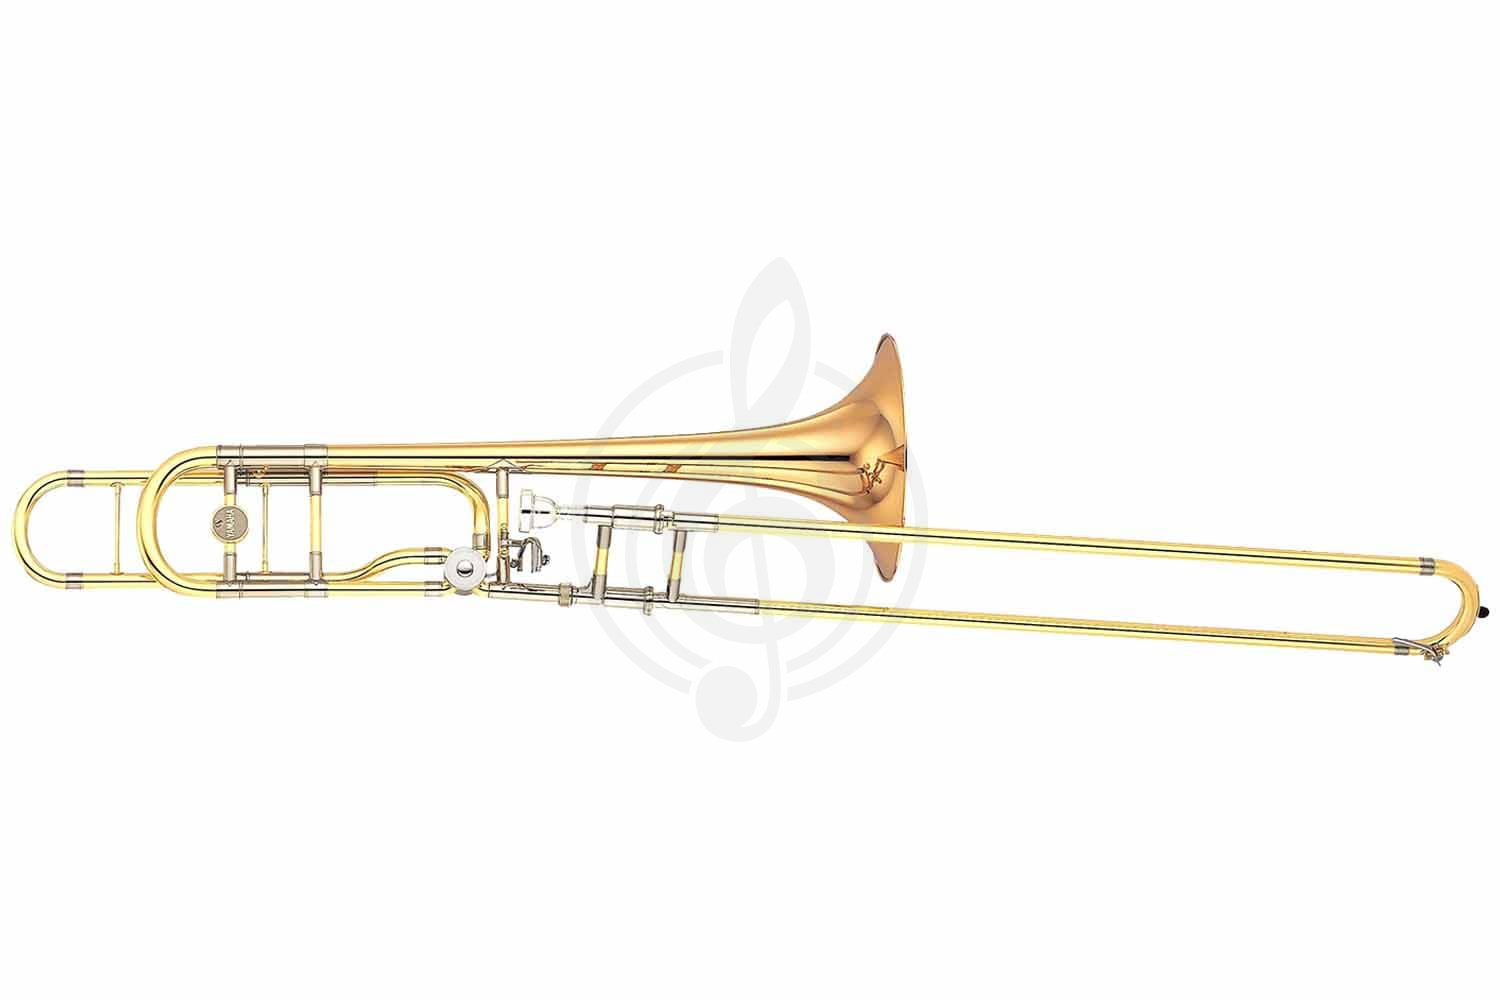 Тромбон Тромбоны Yamaha Yamaha YSL-882GO - Bb/ F тромбон тенор профессиональный, 13,89/220мм, Gold-brass раструб YSL-882GO//03 - фото 1